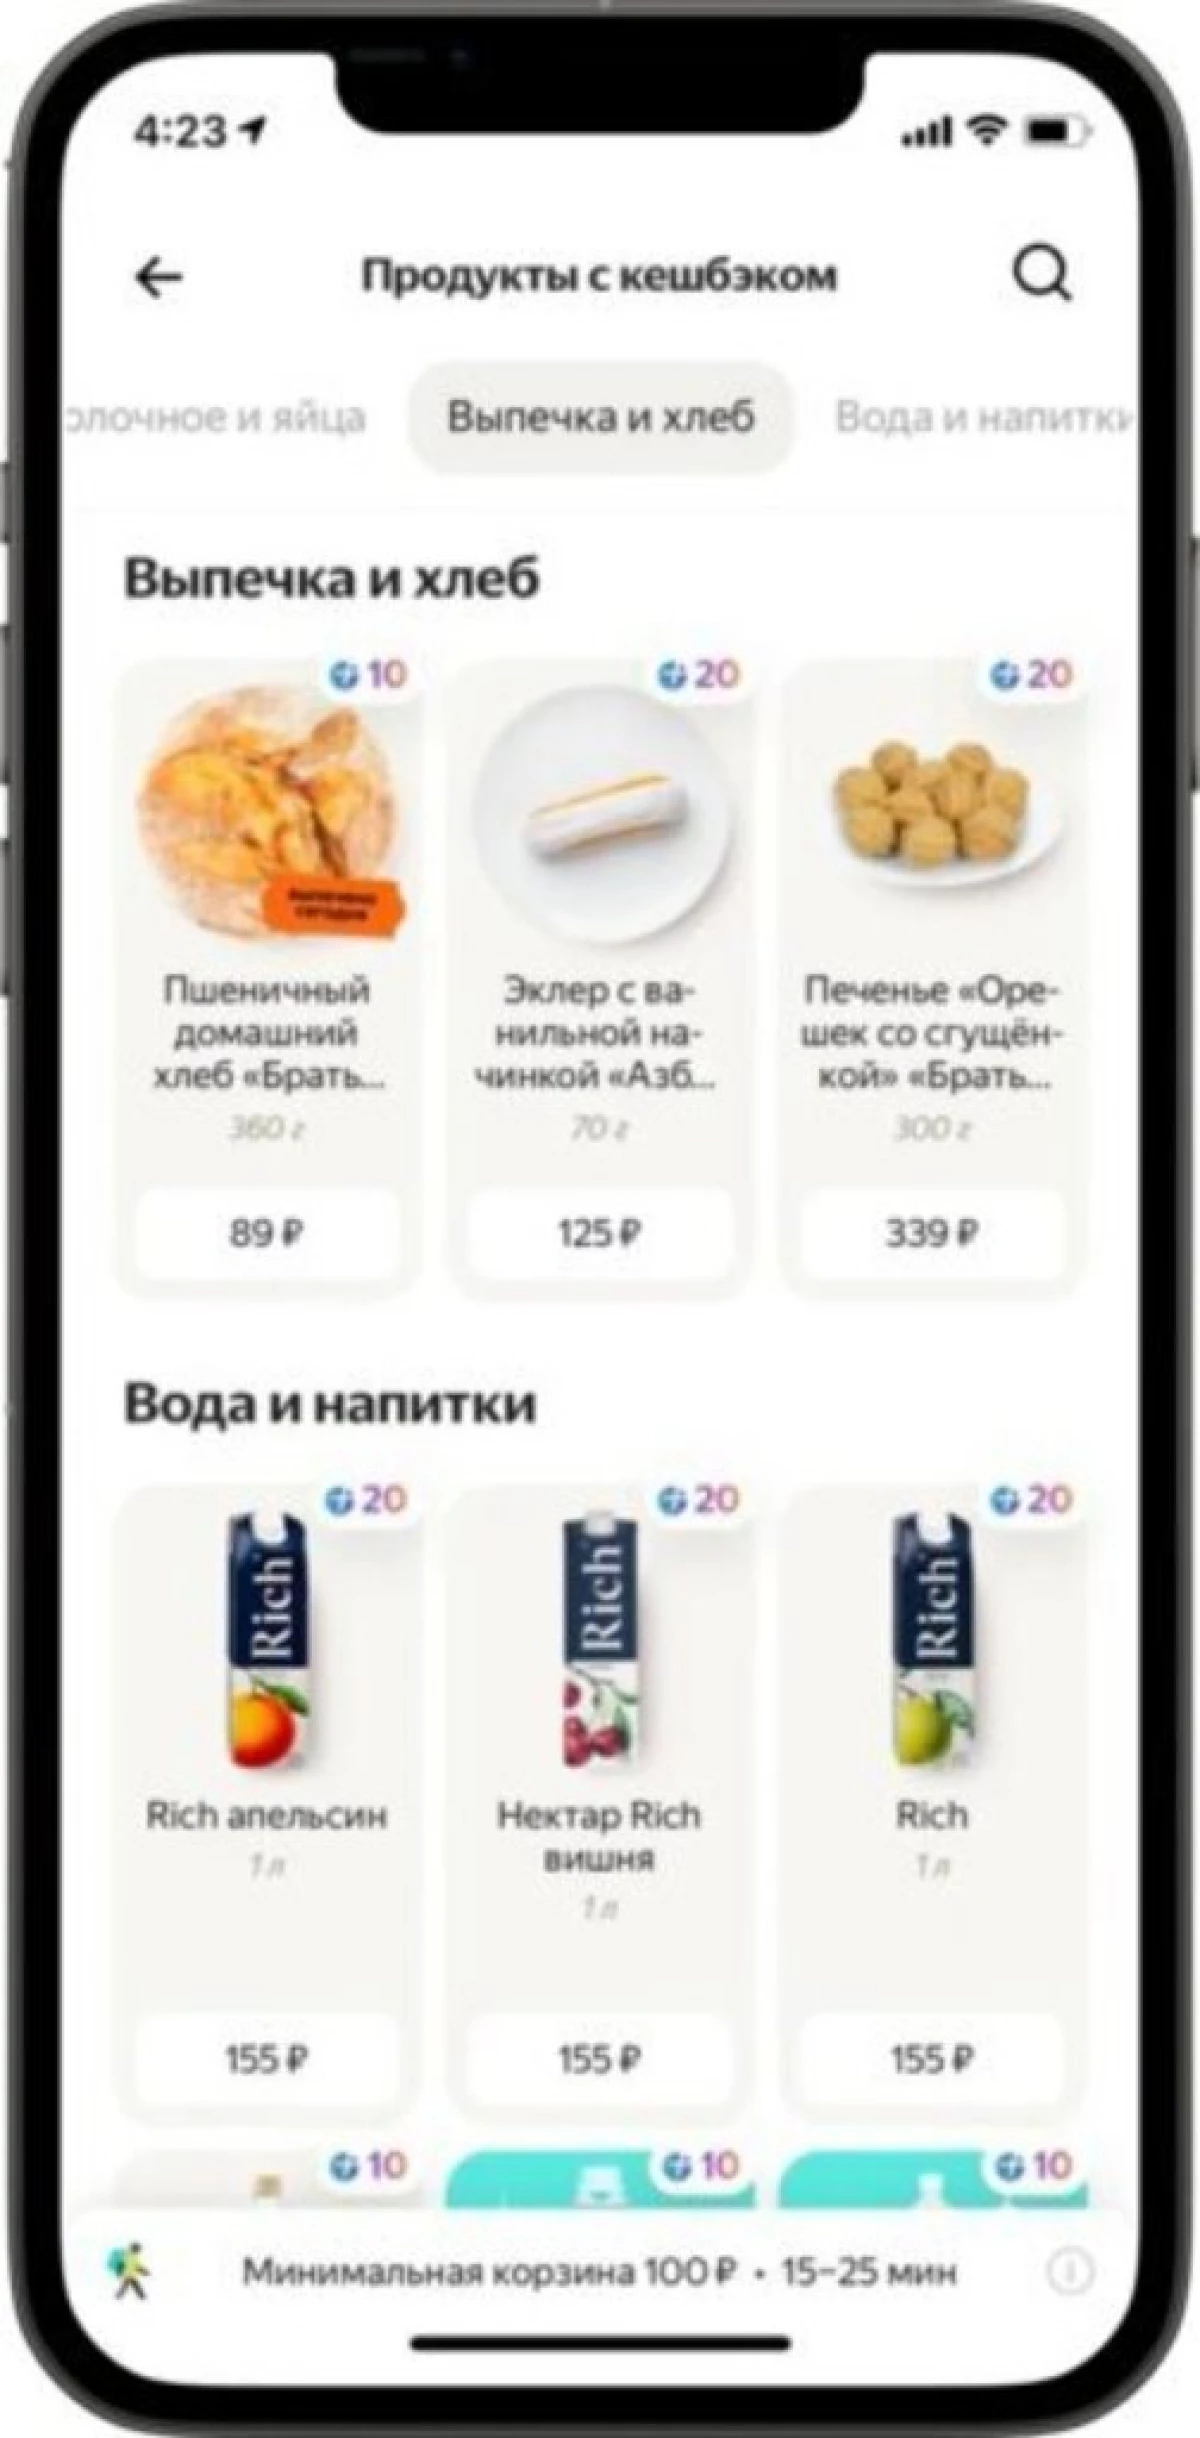 Yandex permess li jirċievi u jonfqu l-punti 